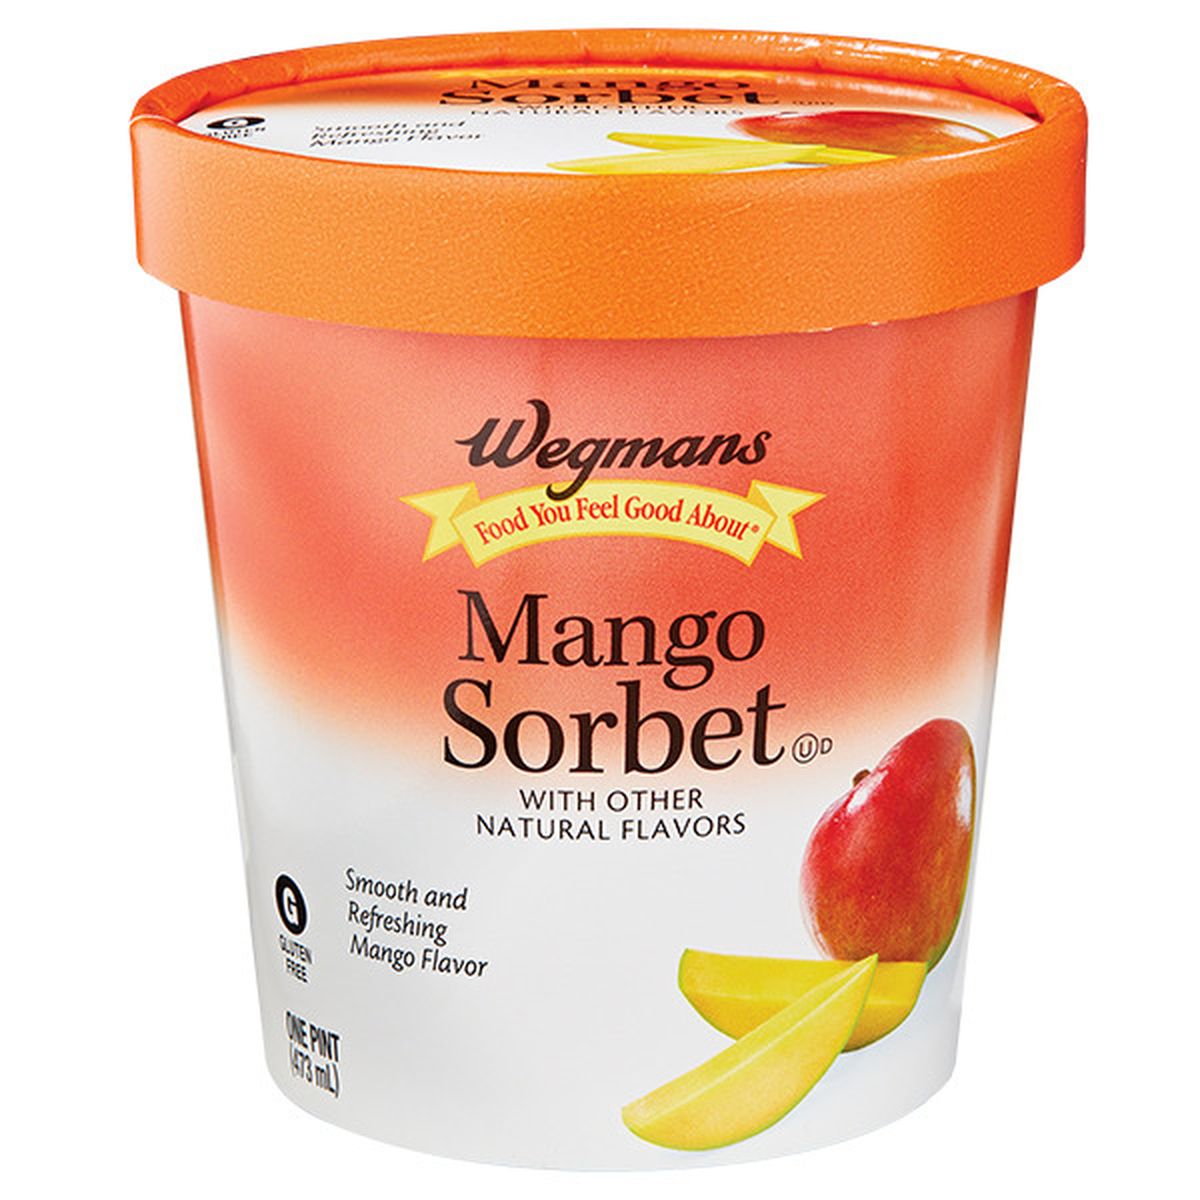 Calories in Wegmans Mango Sorbet